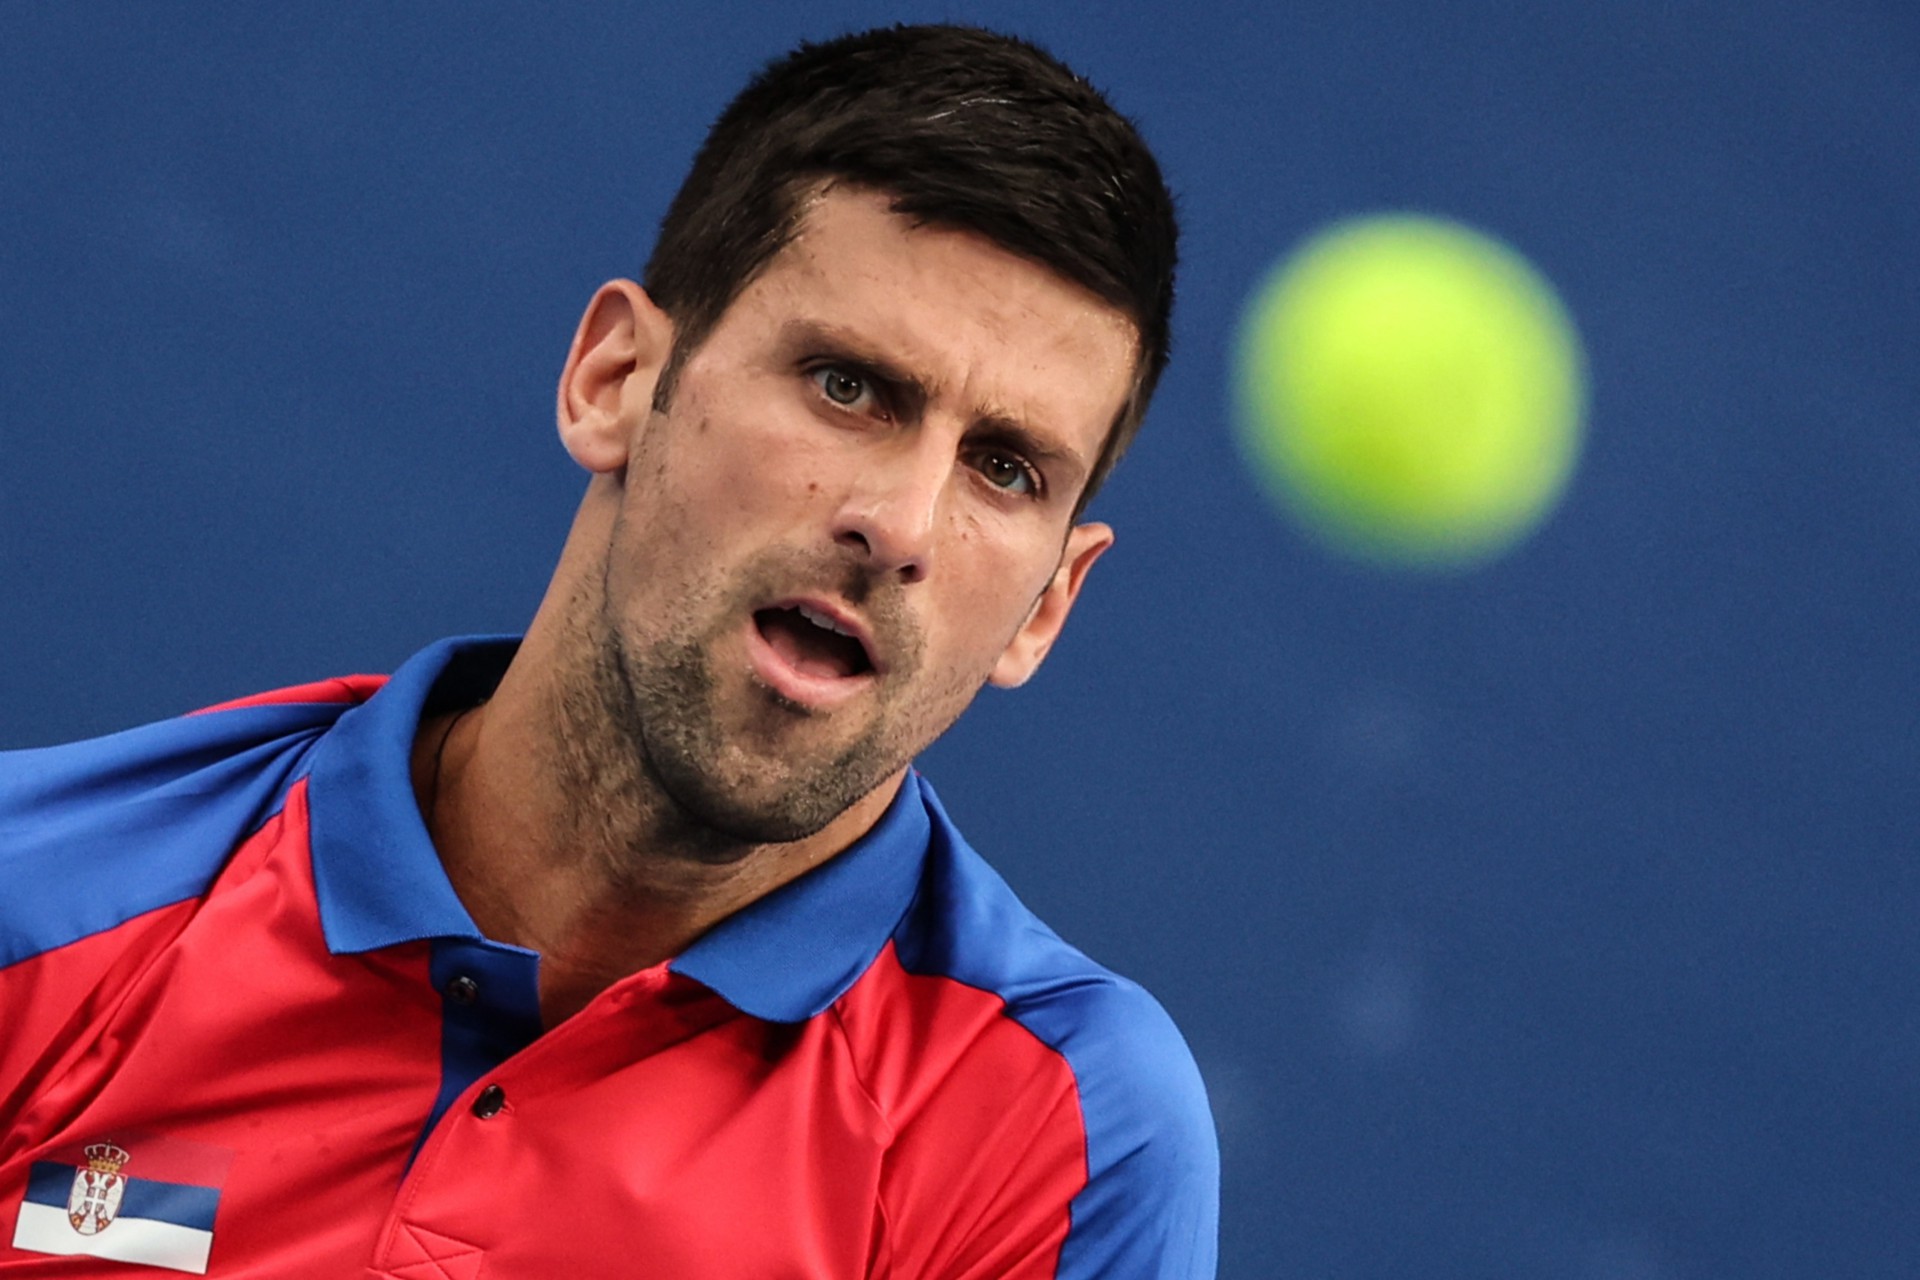 Depois de perder o visto, Djokovic será detido na Austrália